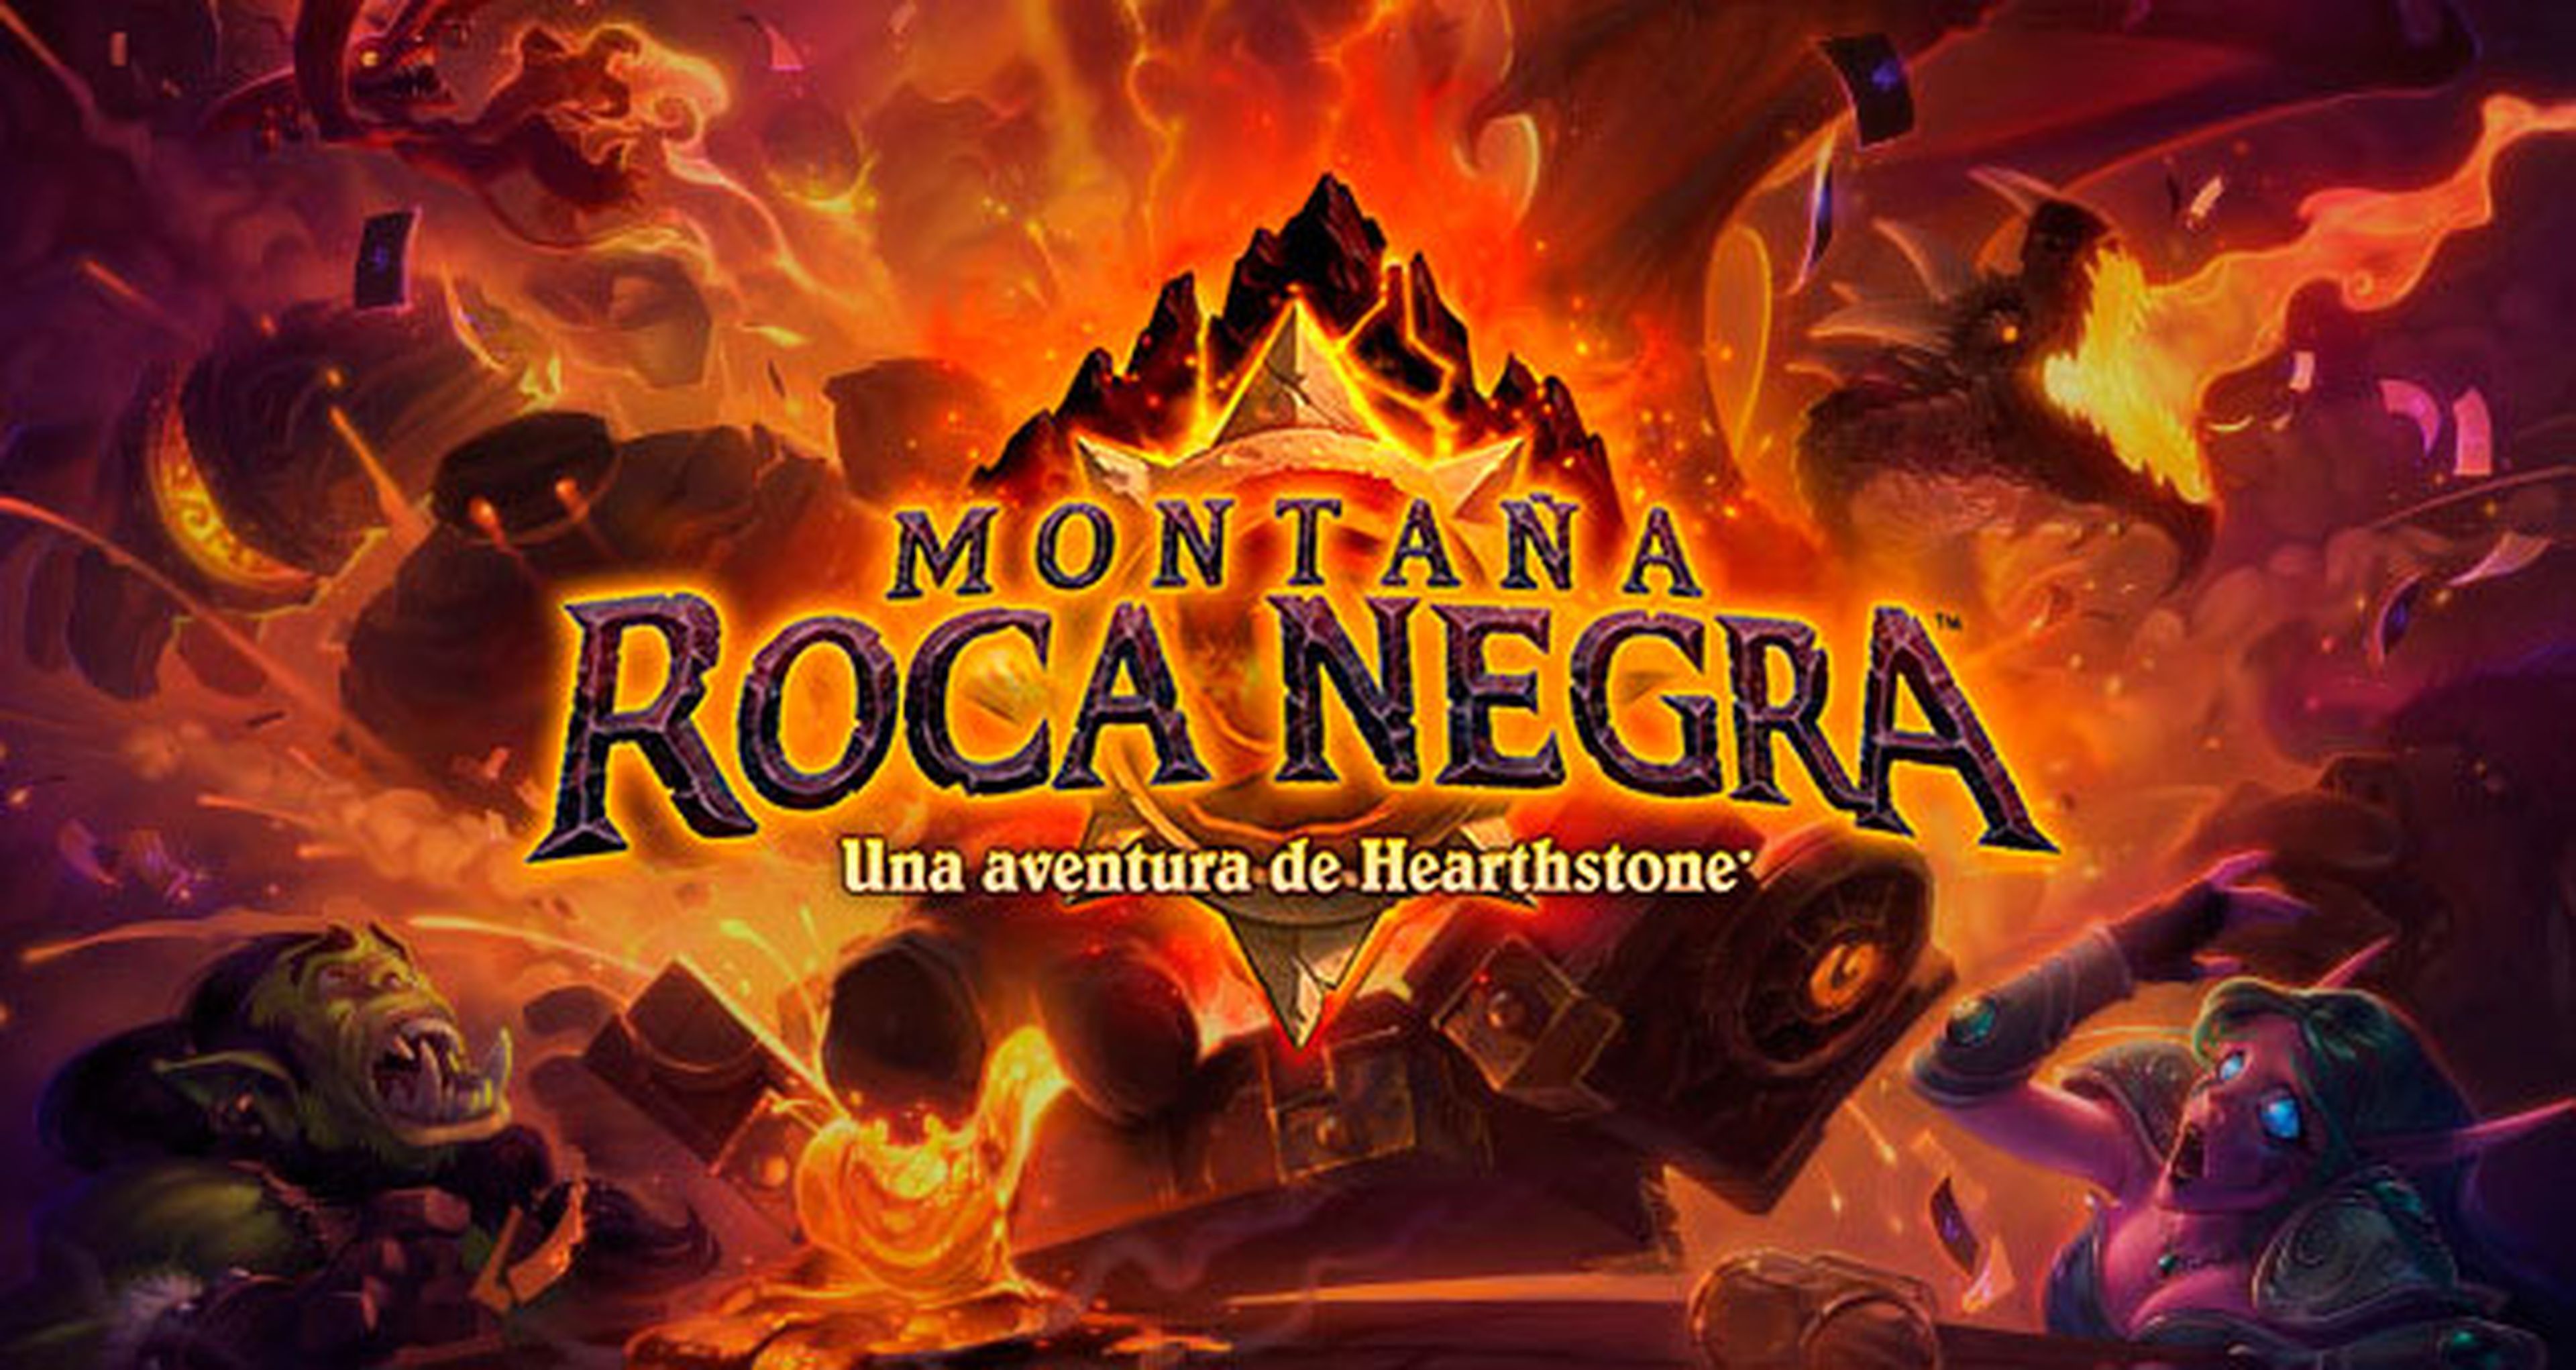 Hearthstone Montaña Roca Negra ya disponible para PC, Mac, iPad y Android